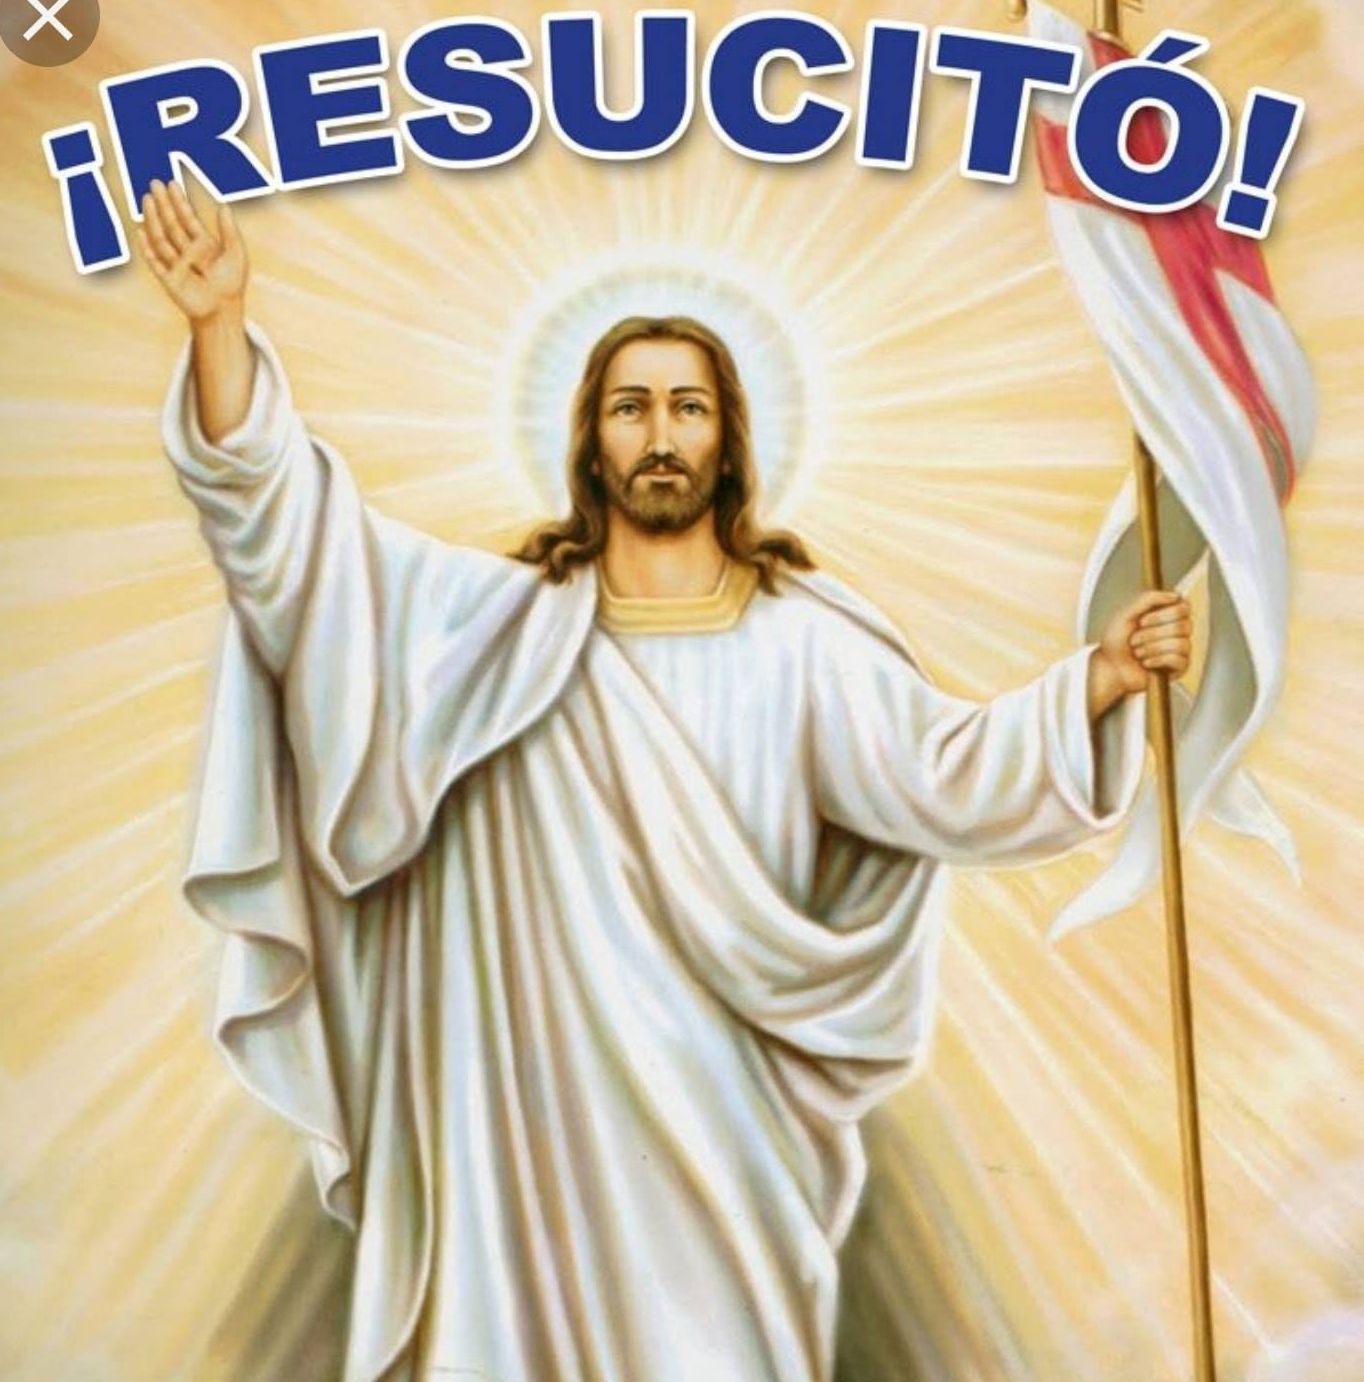 La esperanza de la resurrección en Semana Santa. Cristo resucitó en mí.